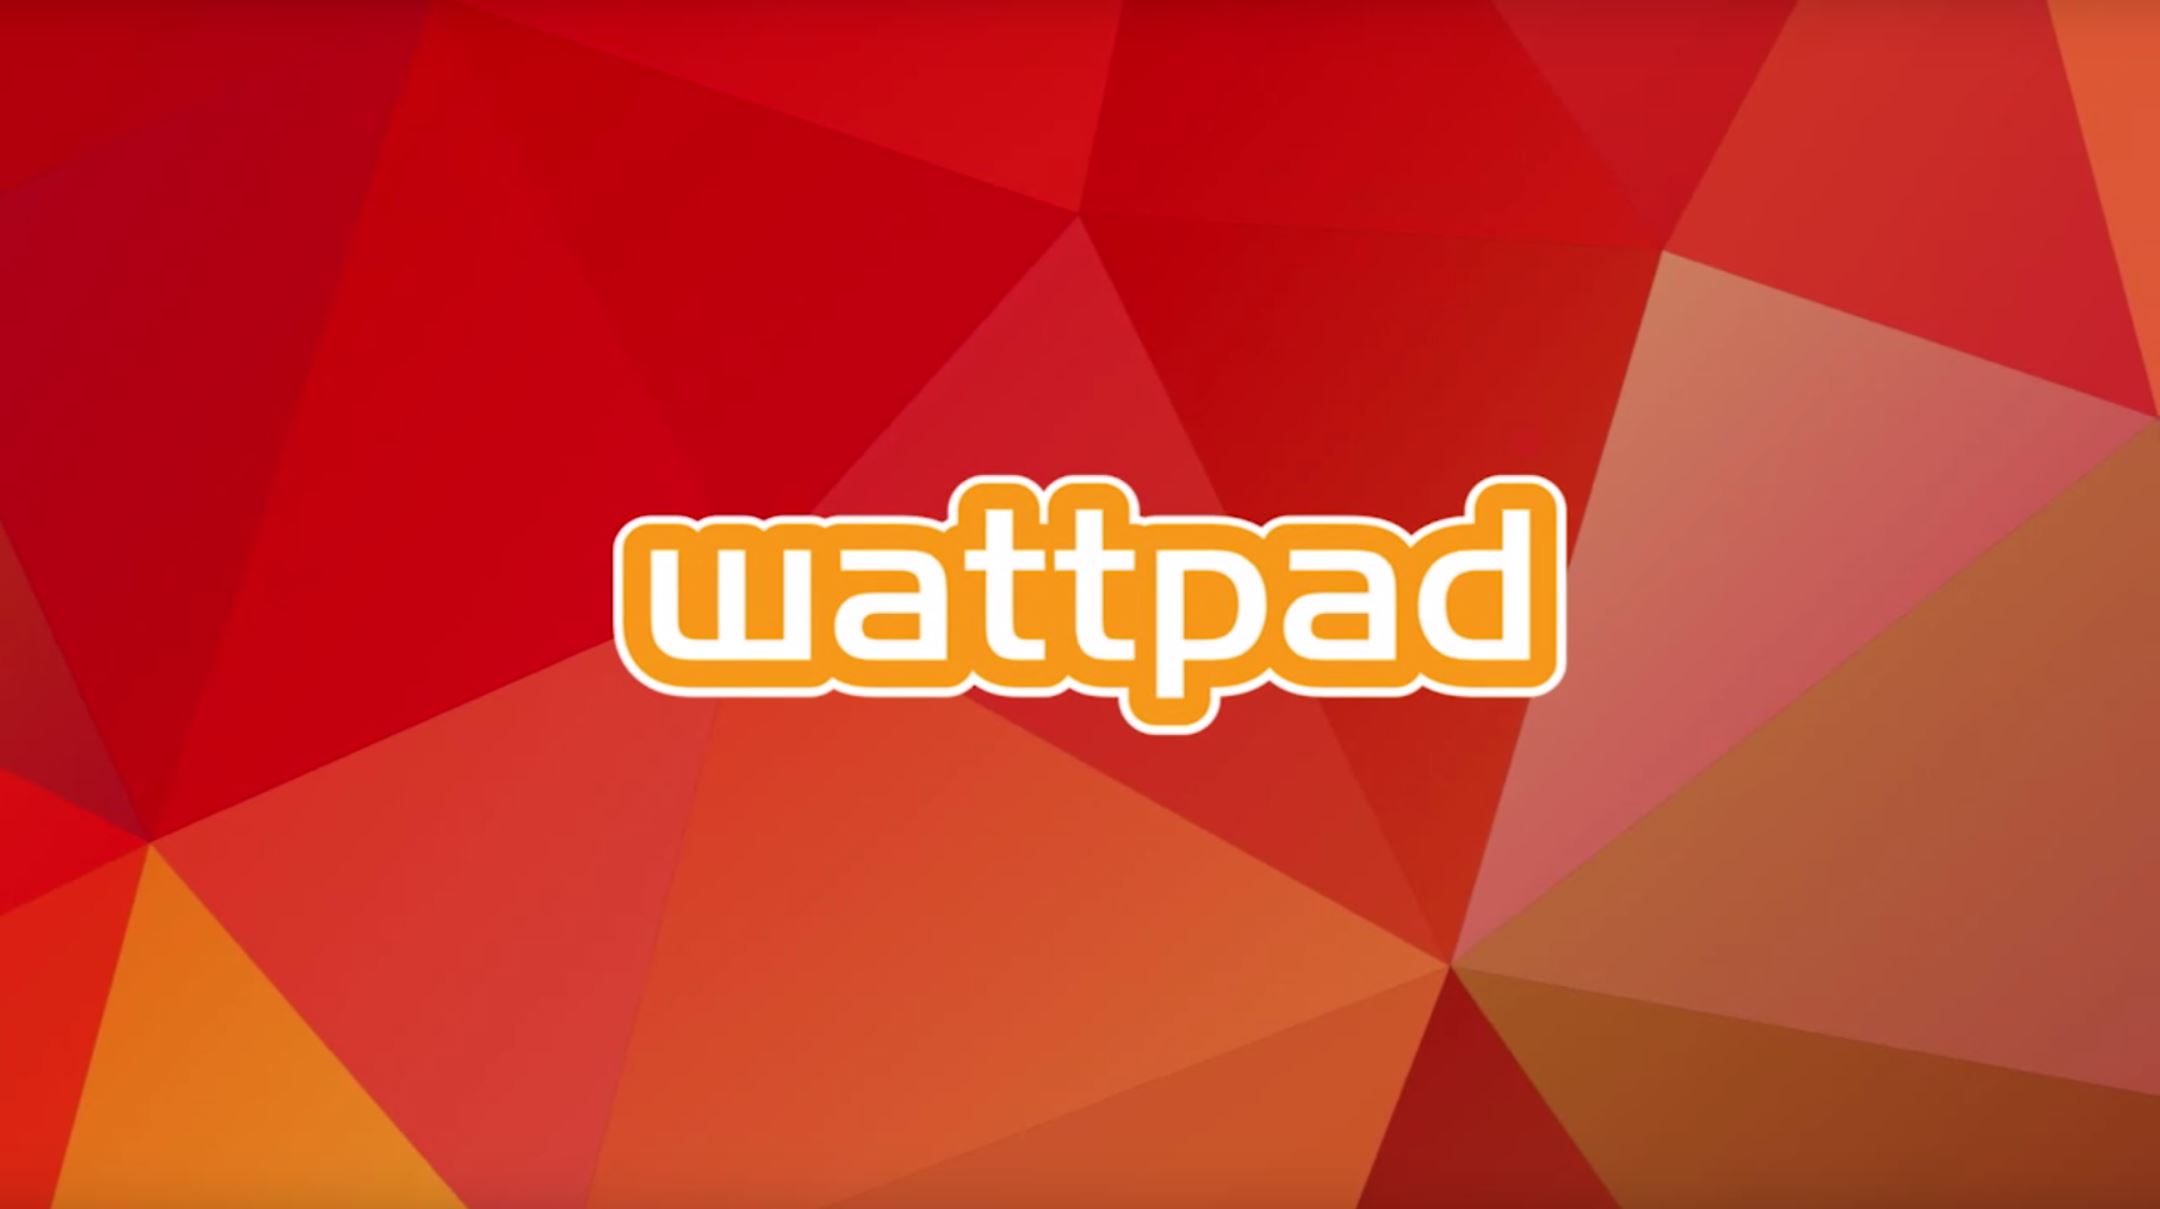 Книги Wattpad теперь доступны в Европе через Пингвин Рэндом Хаус